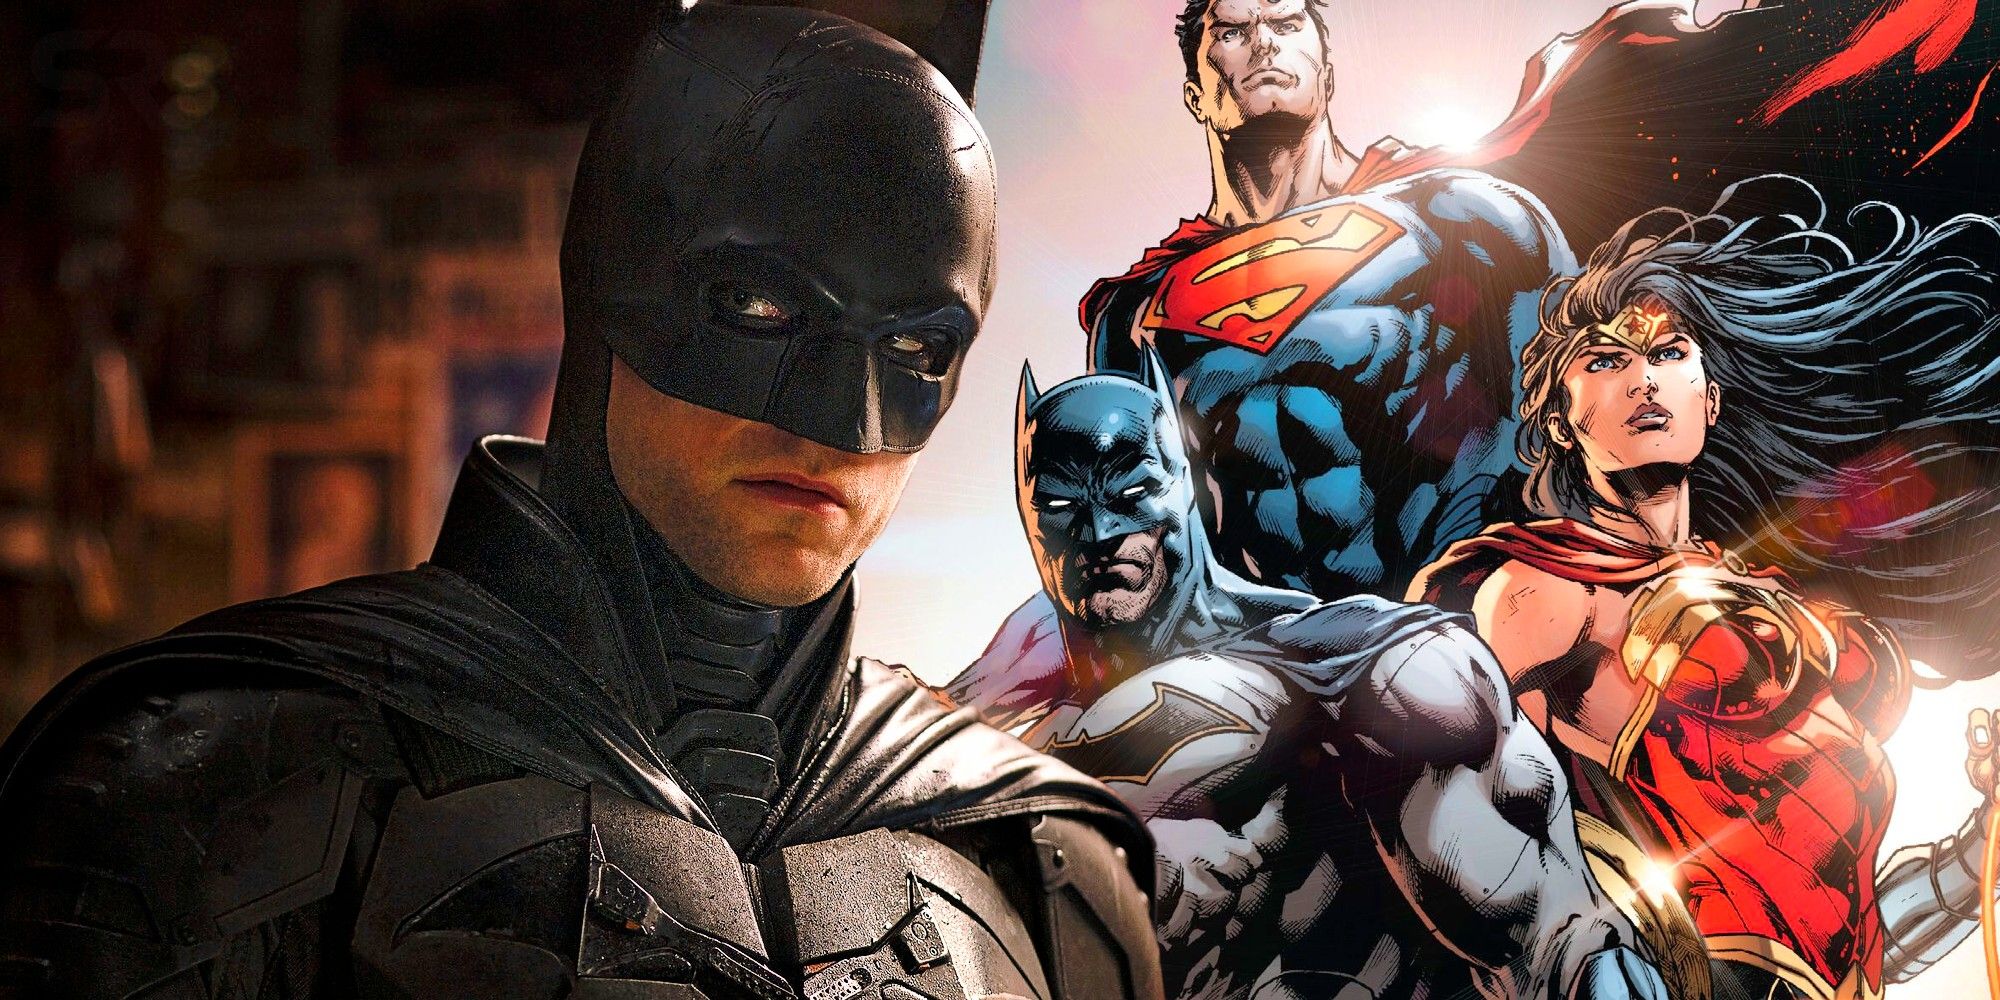 superman vs batman 2022 ben affleck